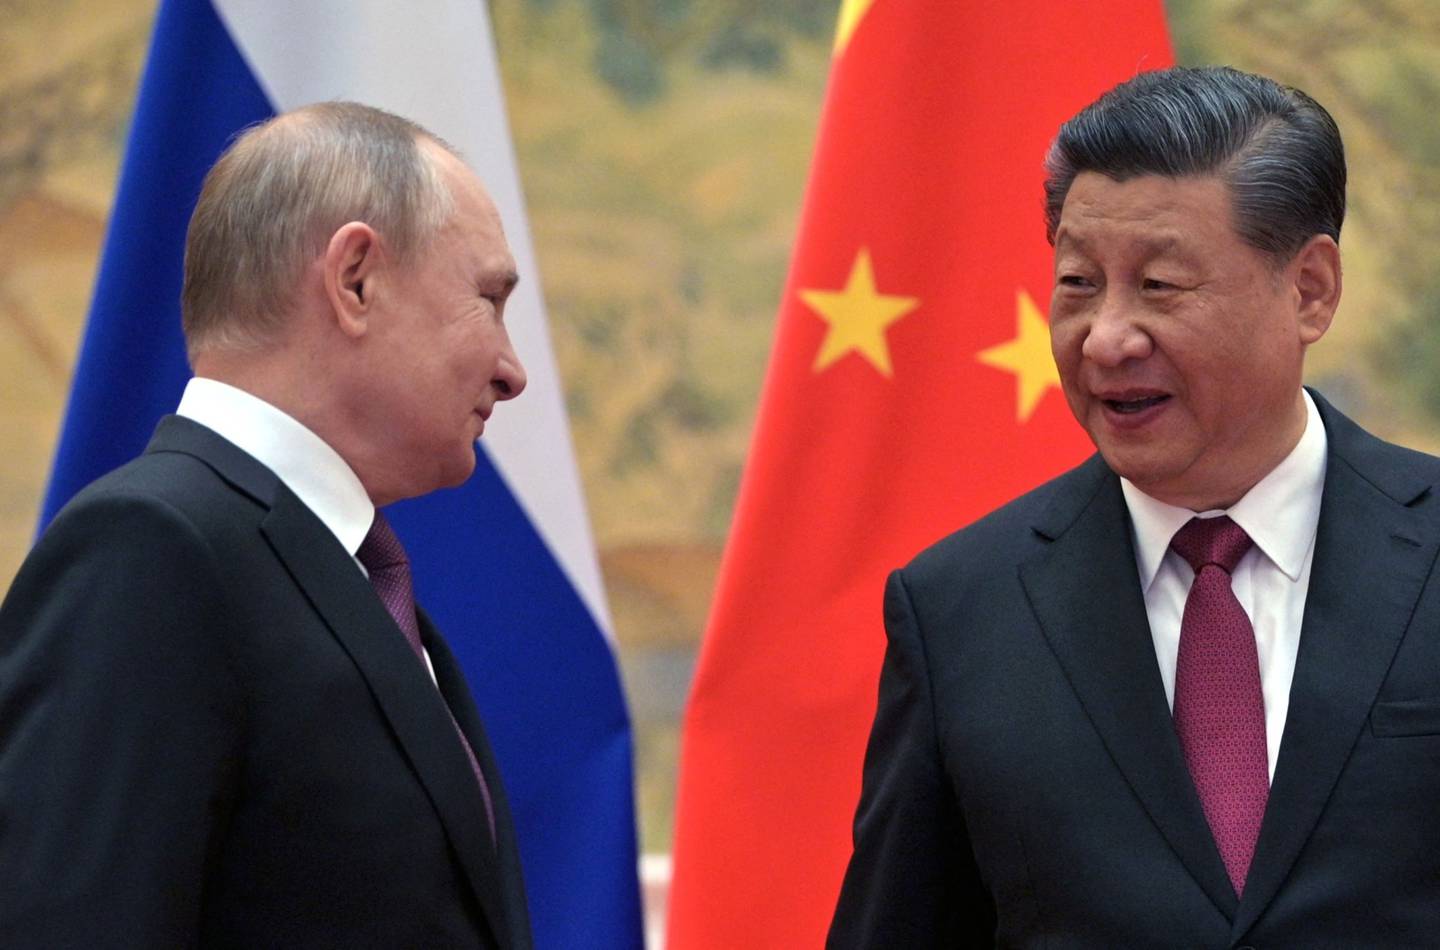 El presidente ruso Vladimir Putin (izq.) y el presidente chino Xi Jinping llegan para posar para una fotografía durante su reunión en Pekín, el 4 de febrero de 2022.  Fotógrafo: Alexei Druzhinin/Sputnik/AFP/Getty Images